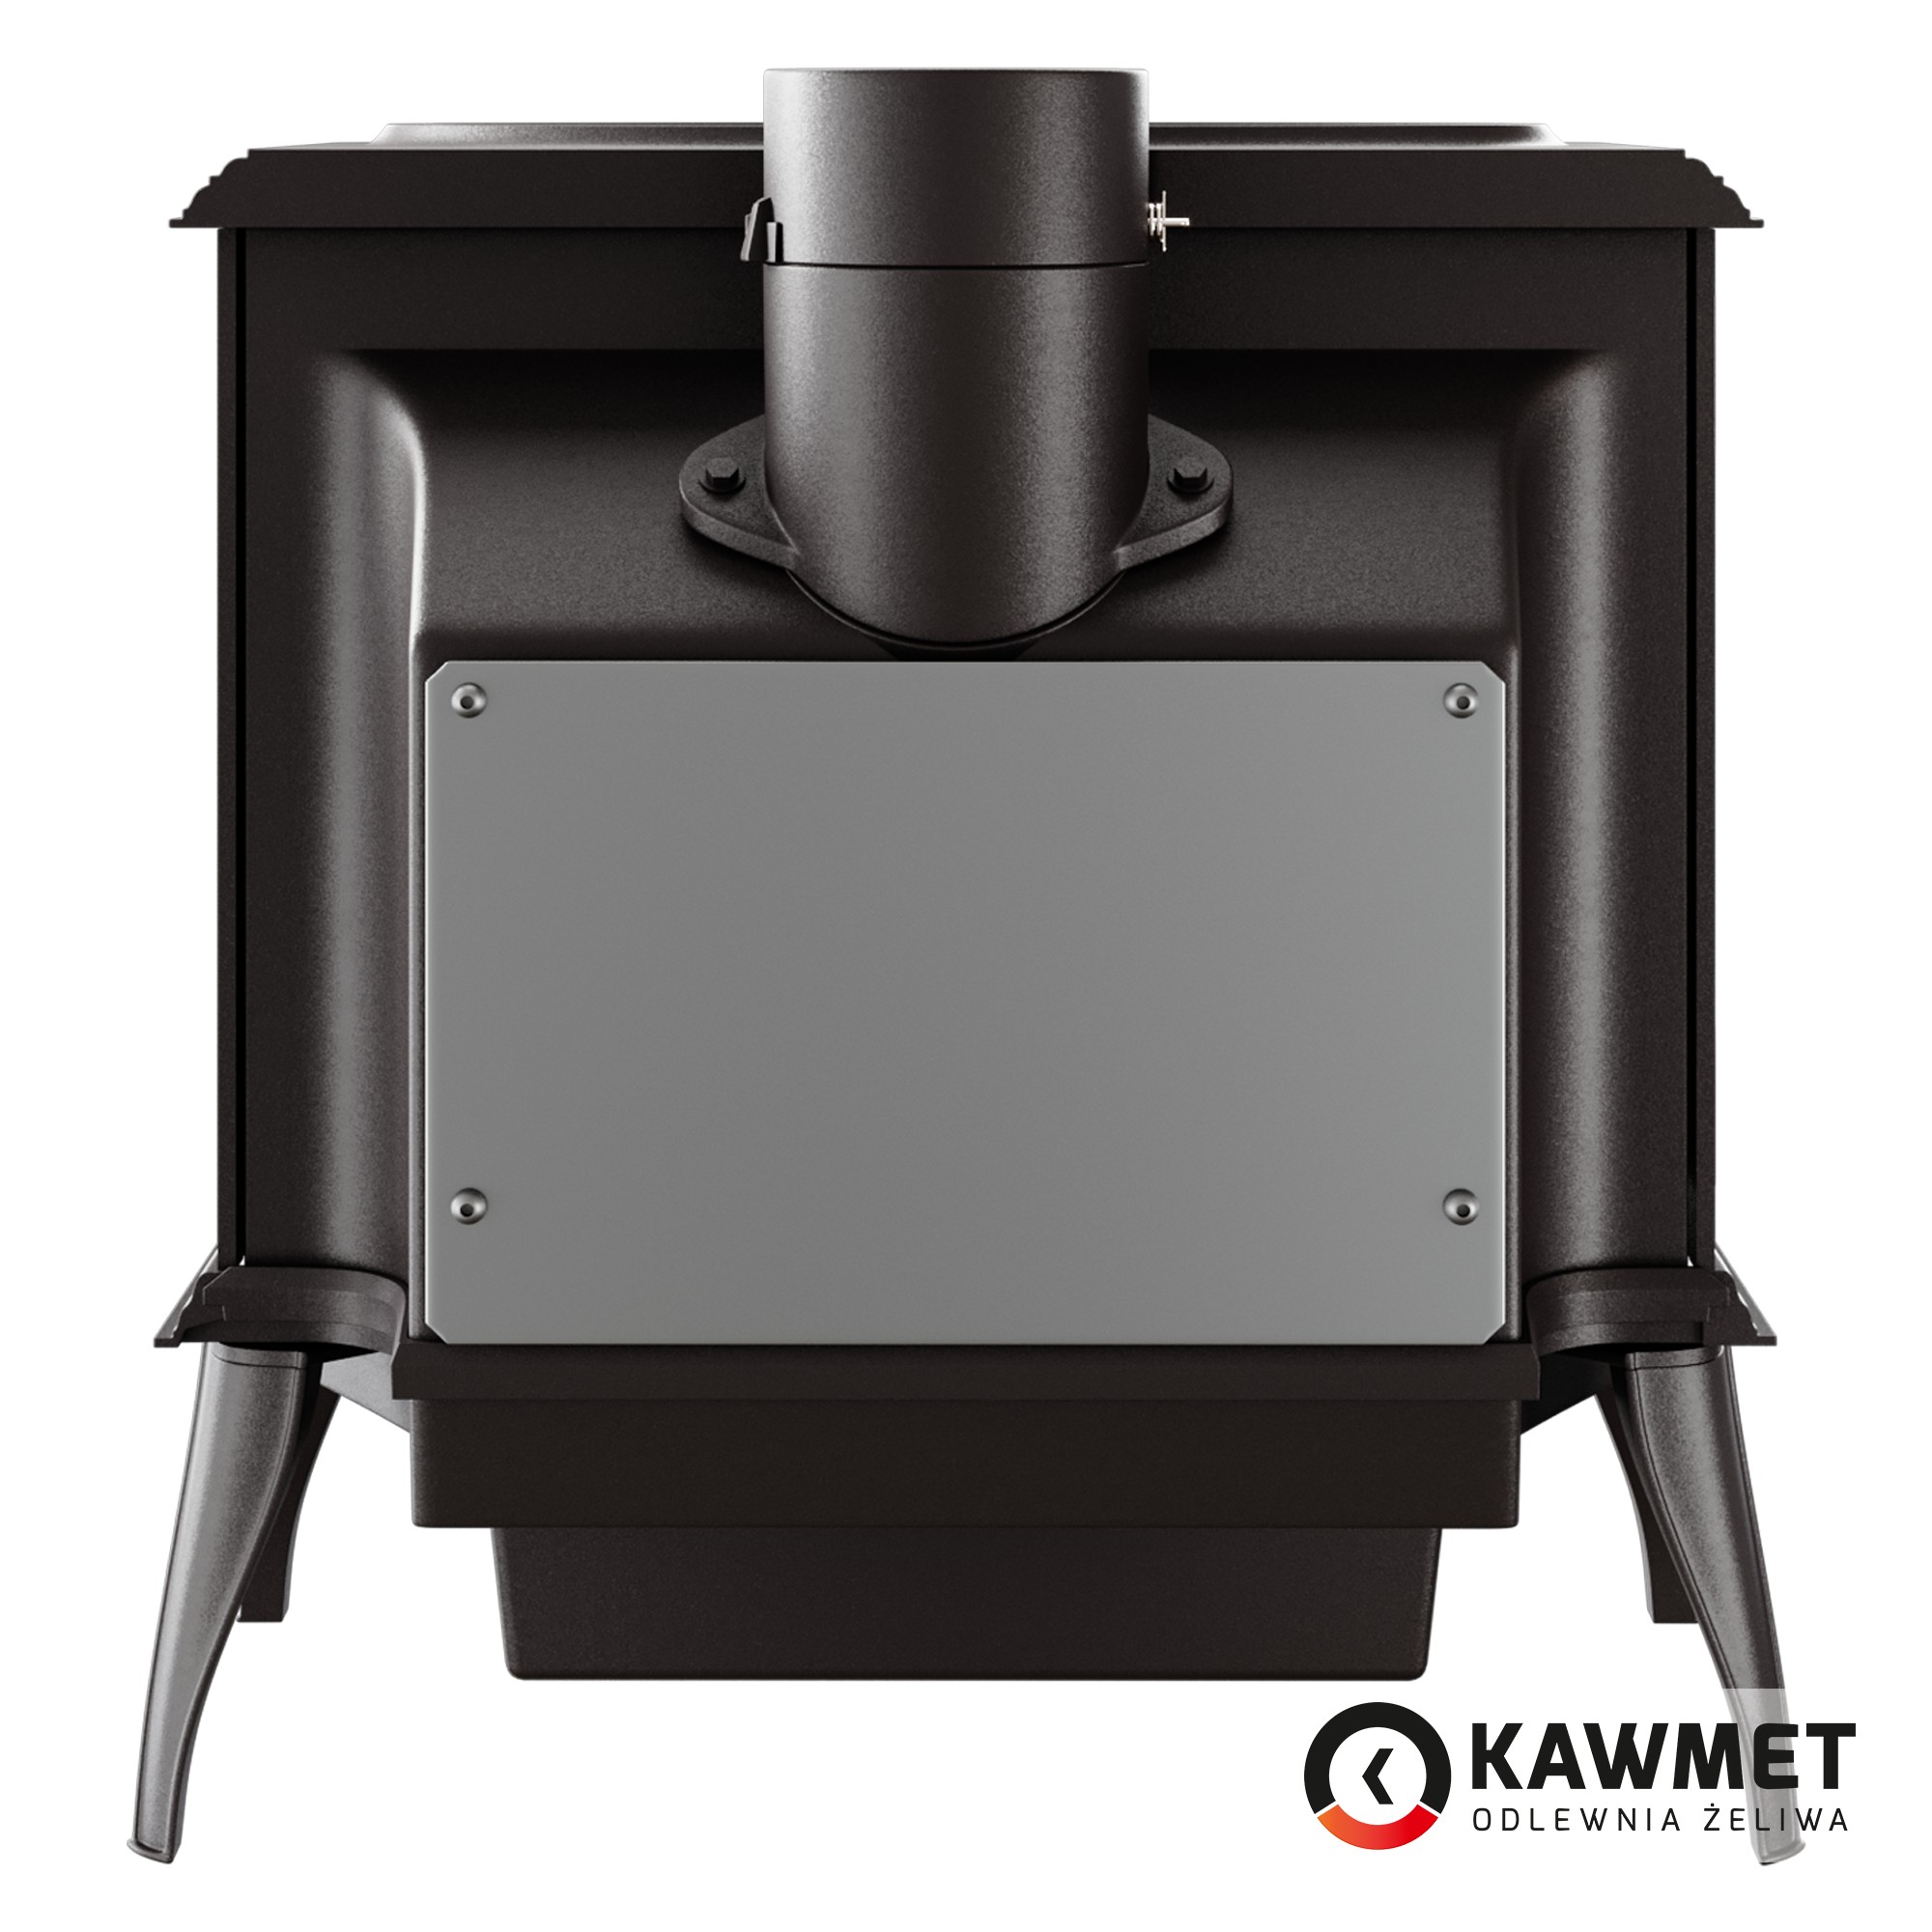 Чавунна піч KAWMET Premium S8 (13,9 kW)